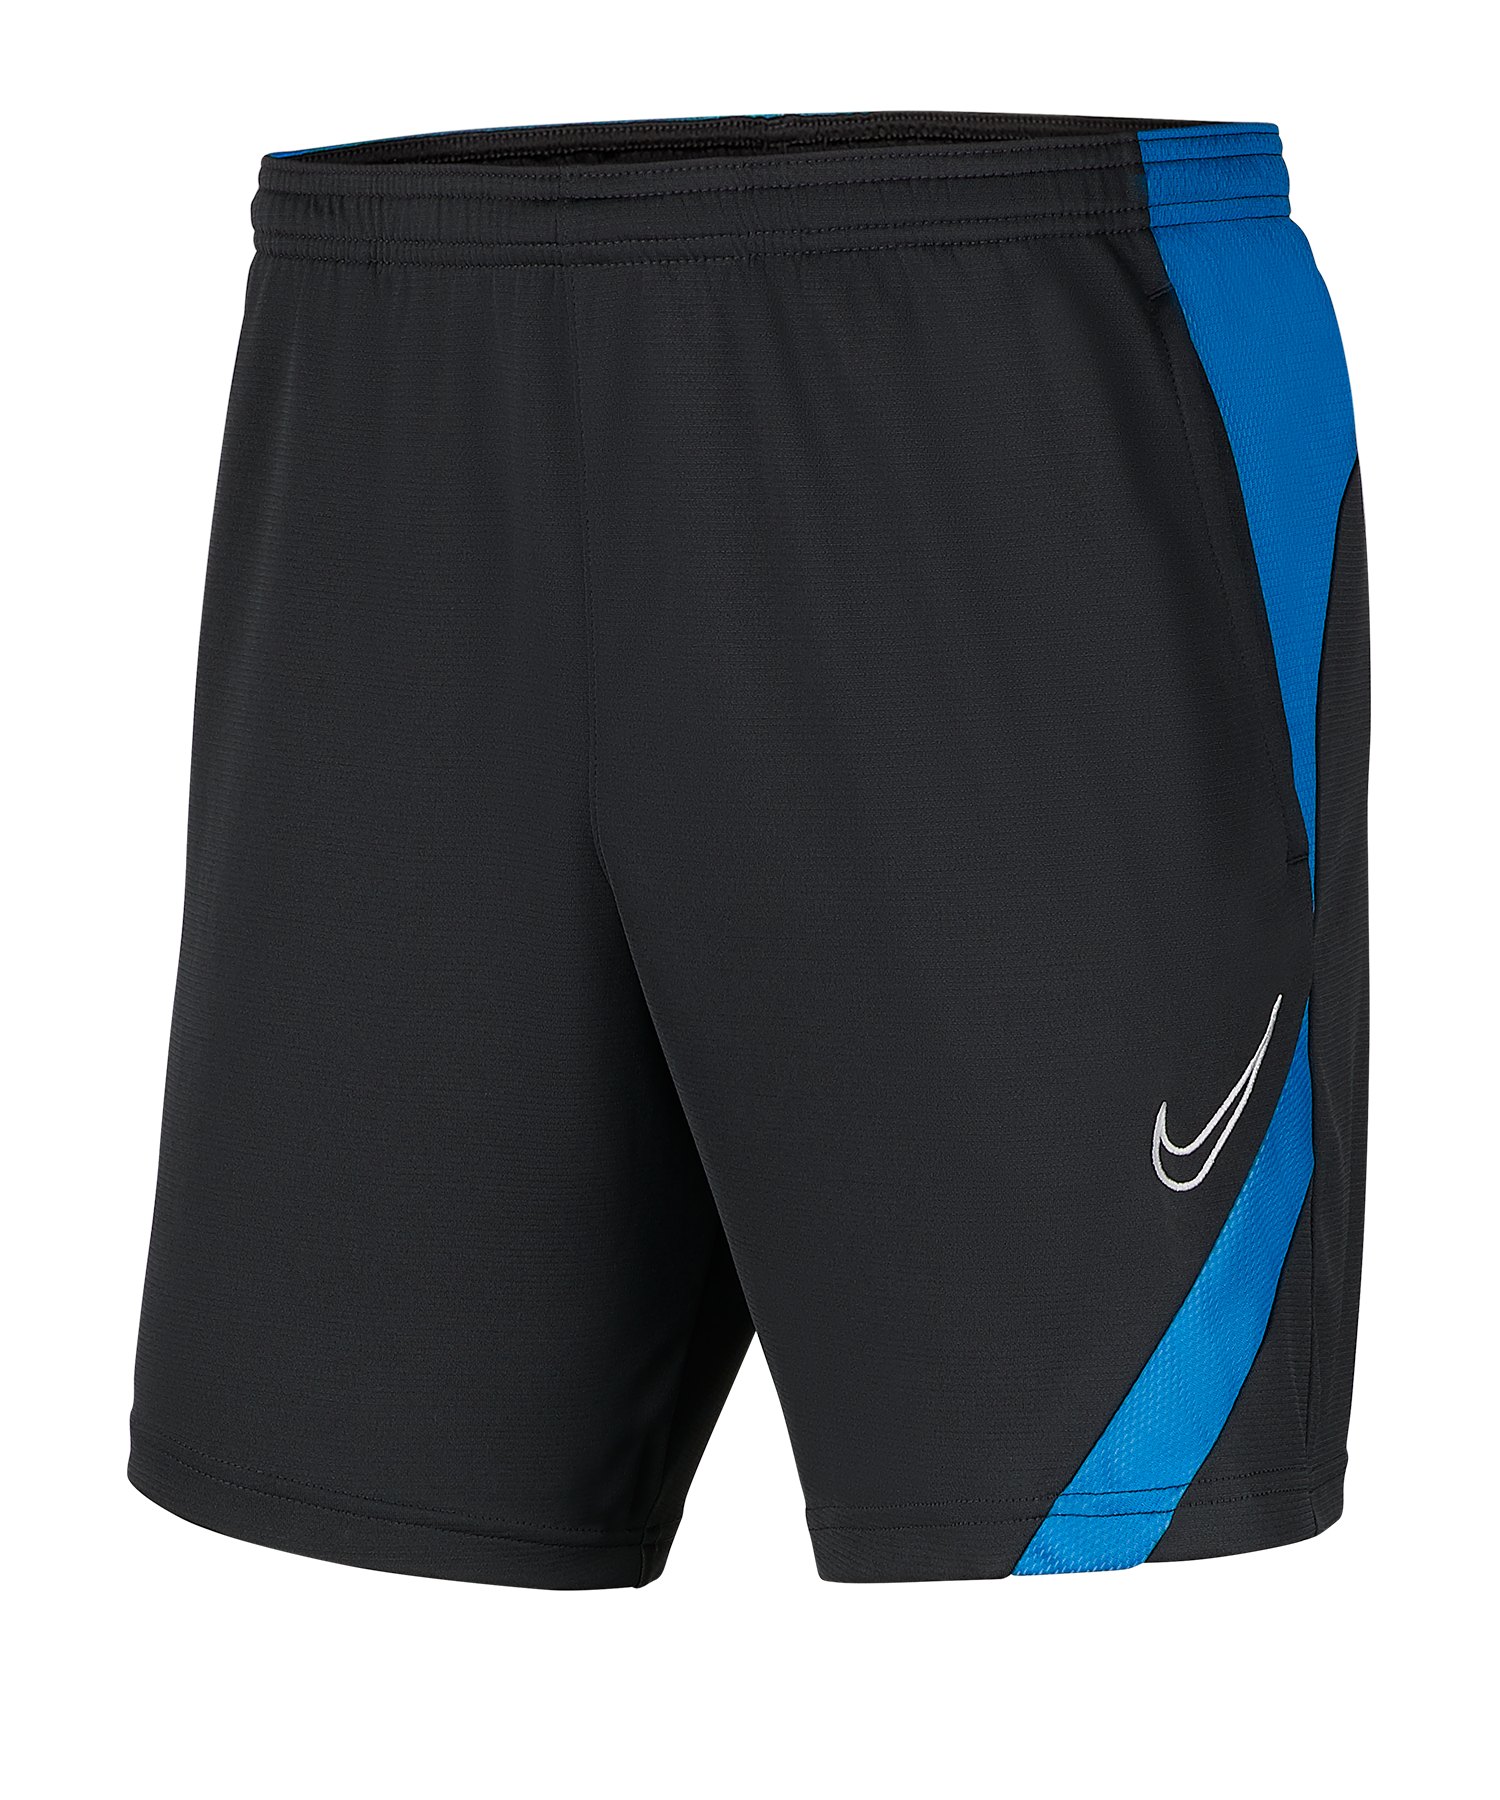 Nike Academy Pro Short Grau Blau F069 - schwarz